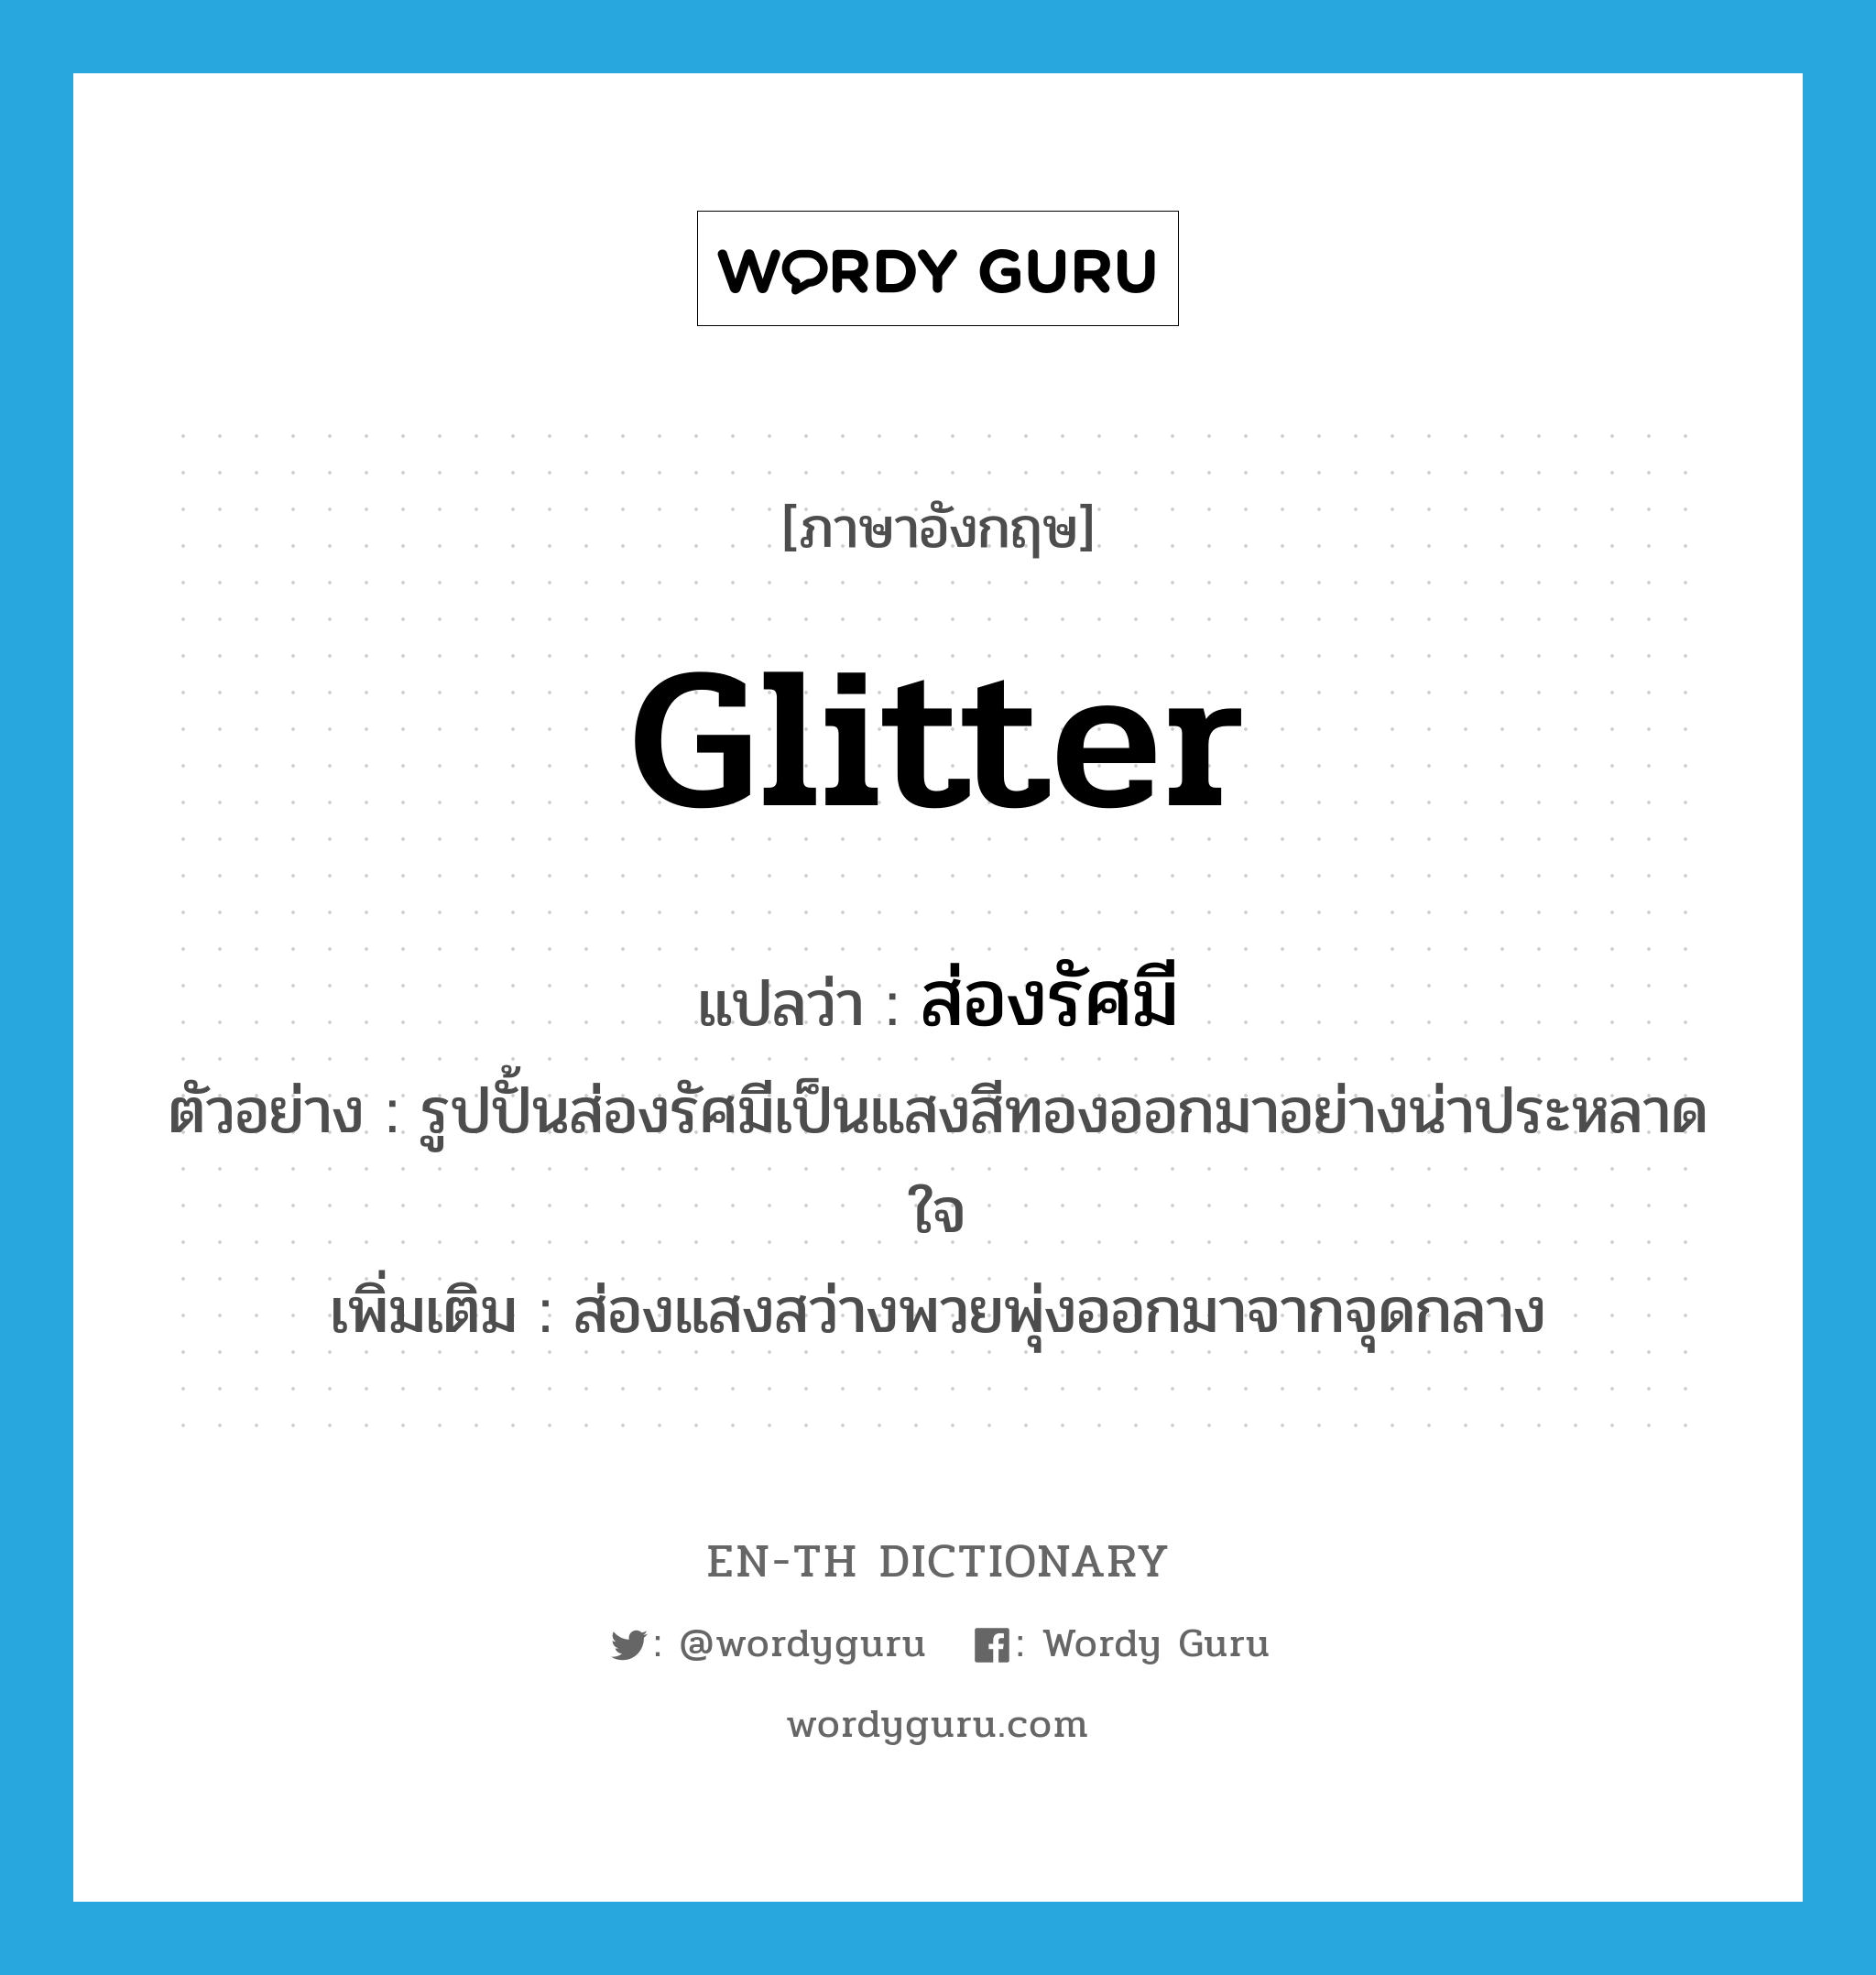 glitter แปลว่า?, คำศัพท์ภาษาอังกฤษ glitter แปลว่า ส่องรัศมี ประเภท V ตัวอย่าง รูปปั้นส่องรัศมีเป็นแสงสีทองออกมาอย่างน่าประหลาดใจ เพิ่มเติม ส่องแสงสว่างพวยพุ่งออกมาจากจุดกลาง หมวด V